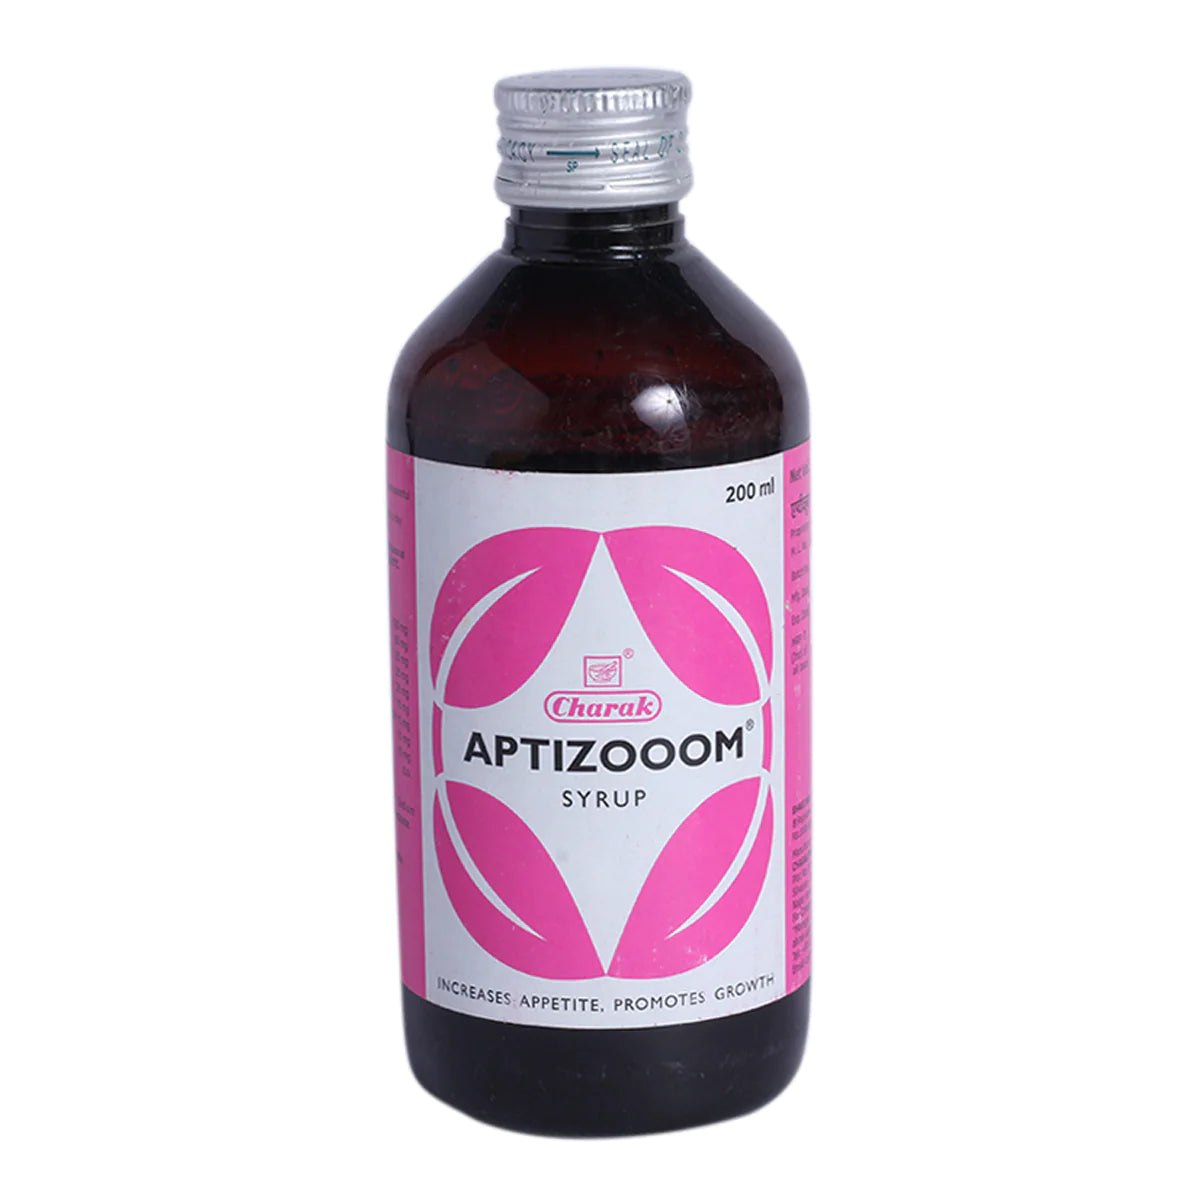 Aptizoom Syrup 200ml -  Charak - Medizzo.com